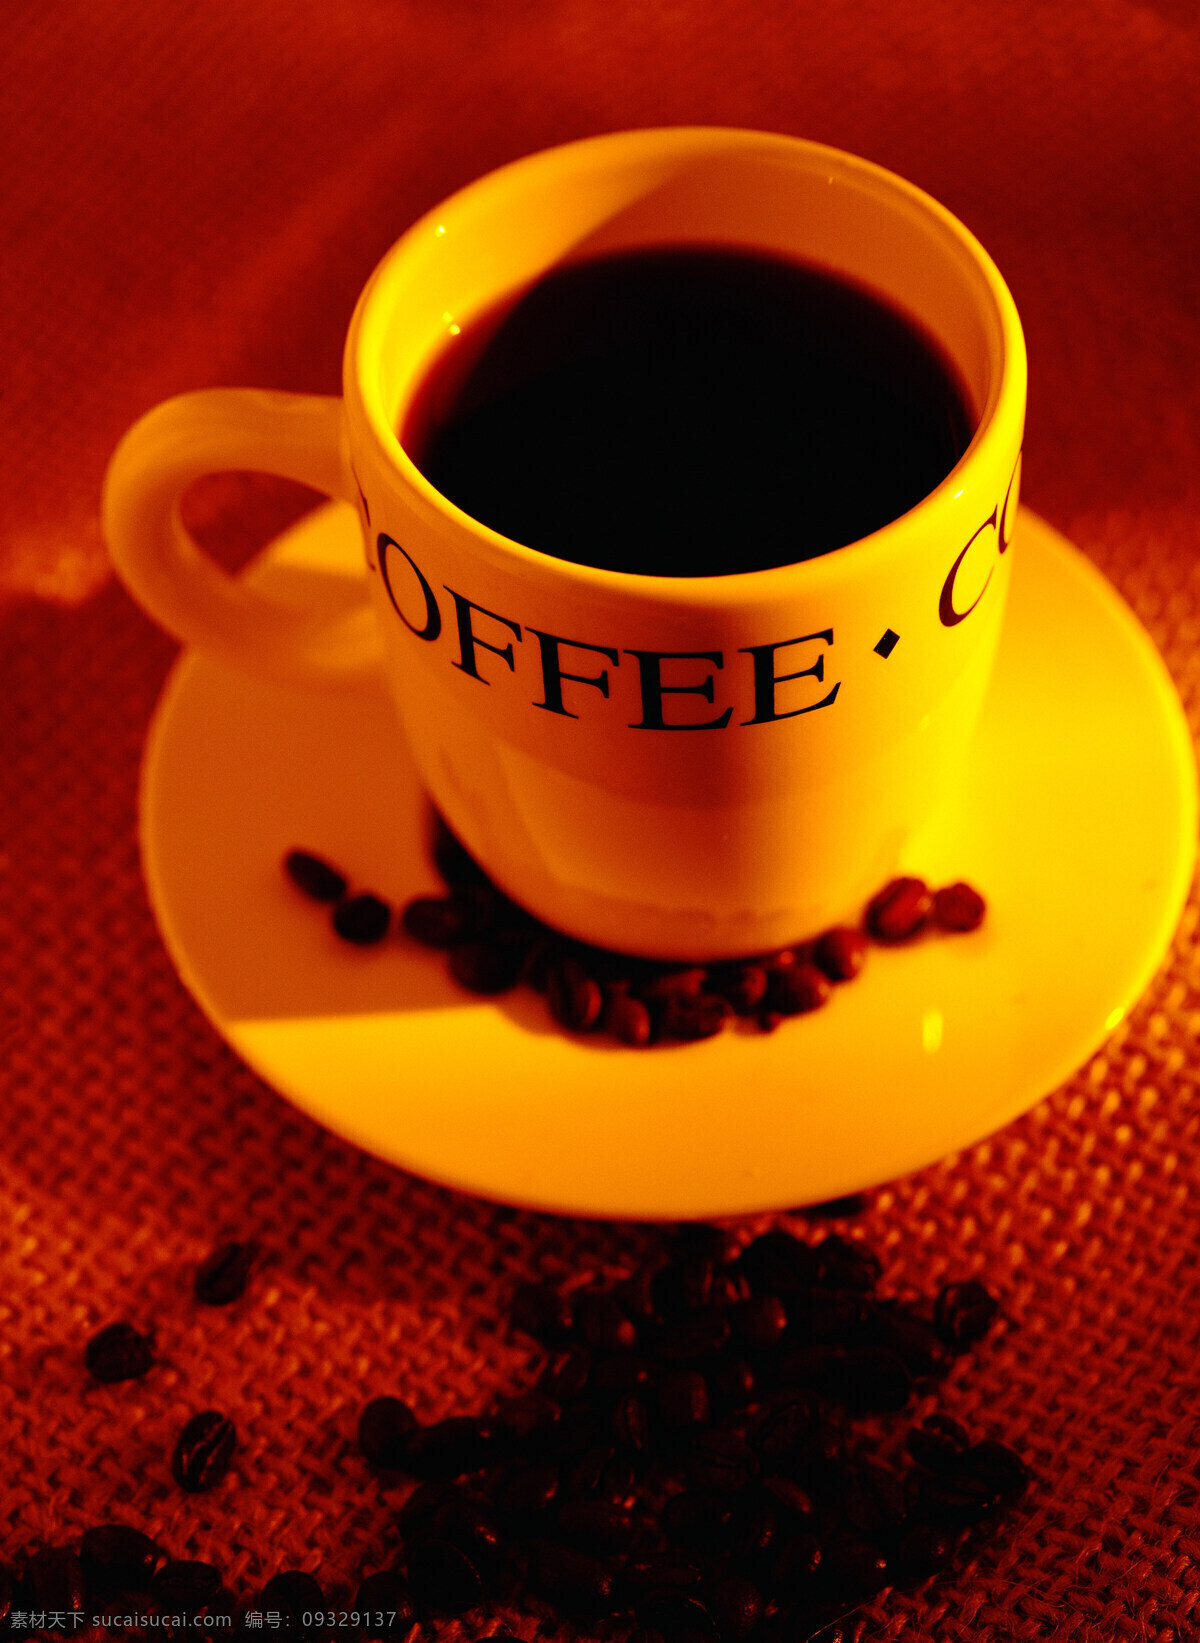 麻袋 上 咖啡豆 咖啡 颗粒 果实 饱满 许多 褐色 托盘 杯子 陶瓷 coffee 浓香 包装 铺垫 高清图片 咖啡图片 餐饮美食